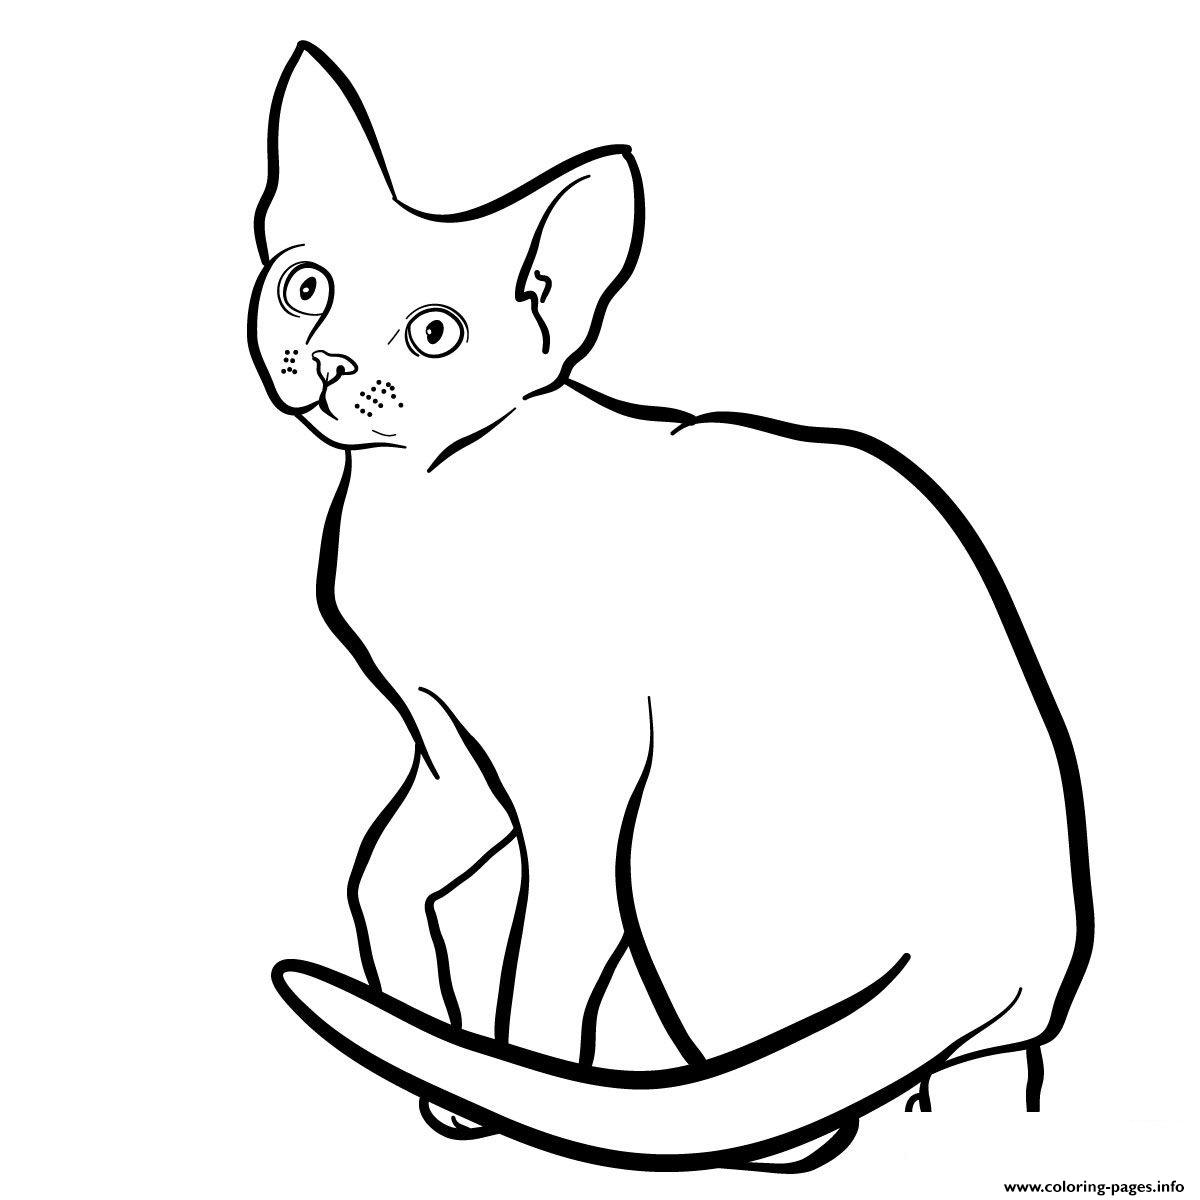 The Devon Rex Cat coloring